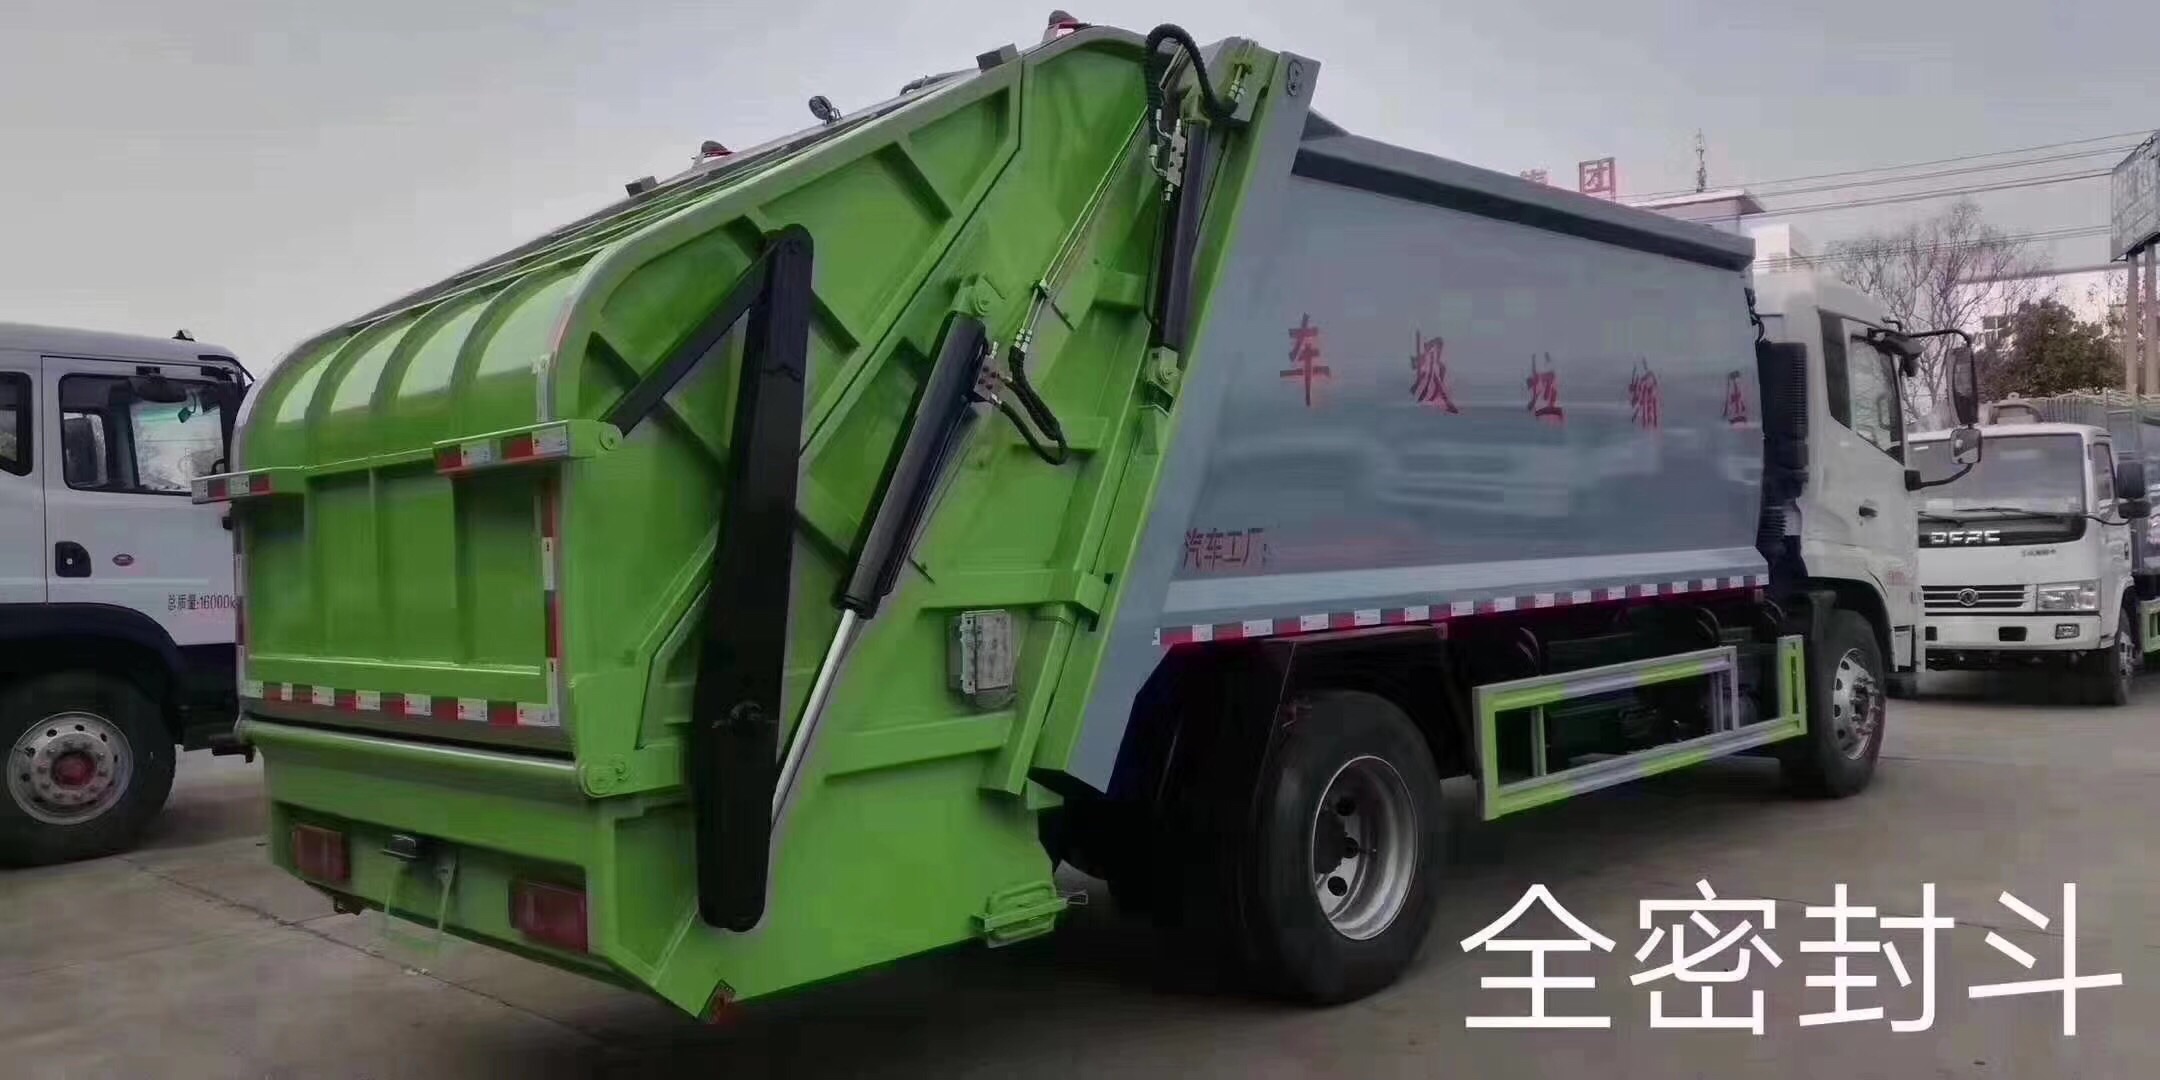 南京垃圾压缩车哪里买 垃圾车生产厂家 包上户可做分期